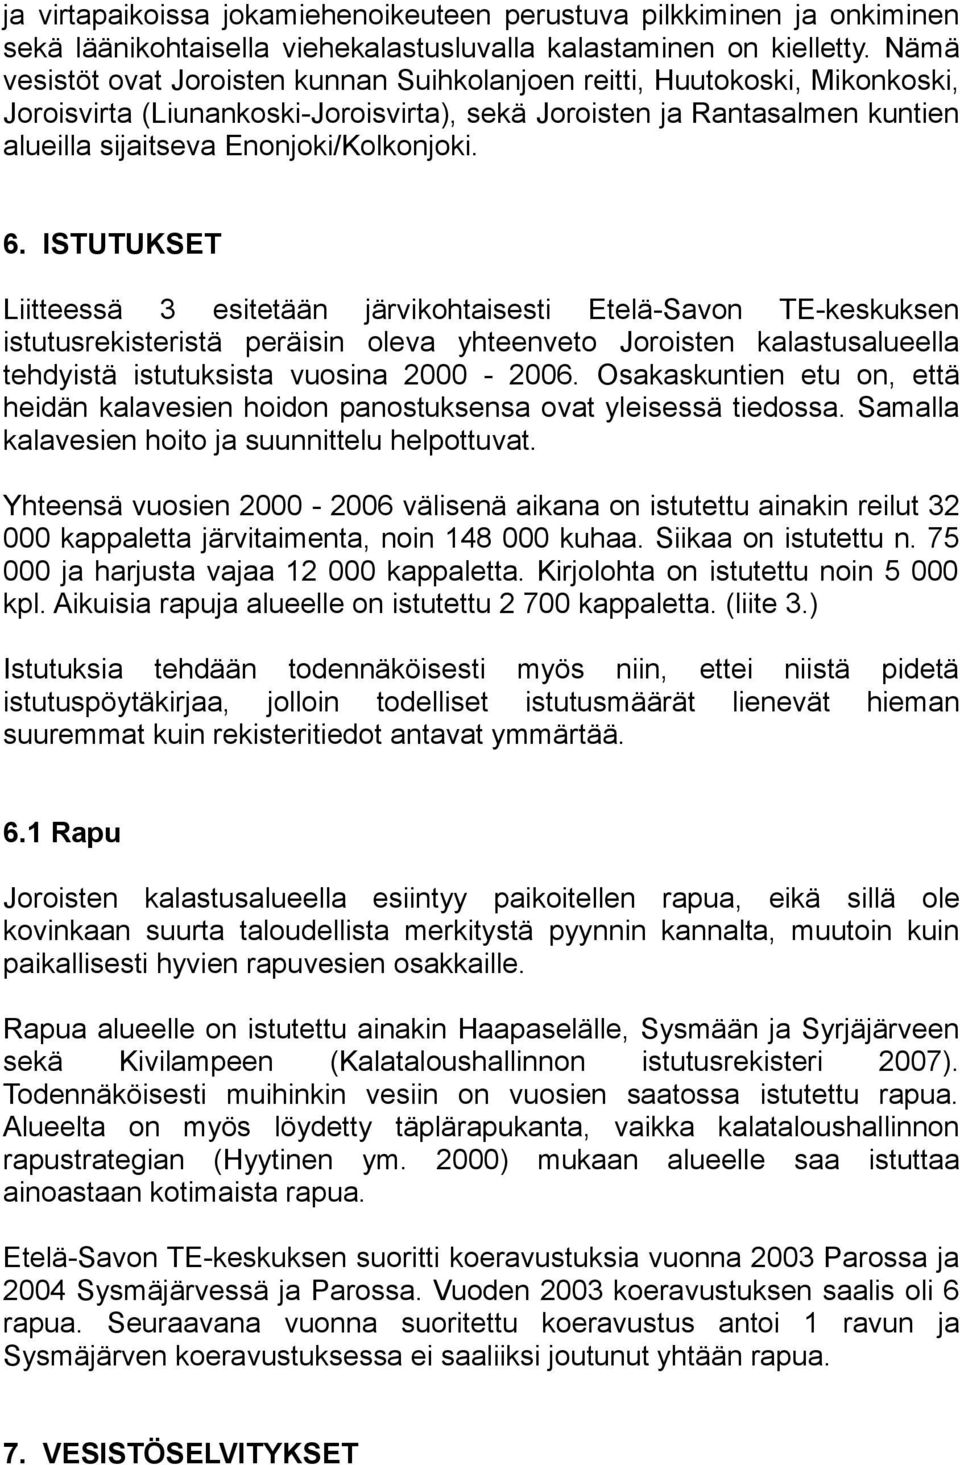 6. ISTUTUKSET Liitteessä 3 esitetään järvikohtaisesti Etelä-Savon TE-keskuksen istutusrekisteristä peräisin oleva yhteenveto Joroisten kalastusalueella tehdyistä istutuksista vuosina 2000-2006.